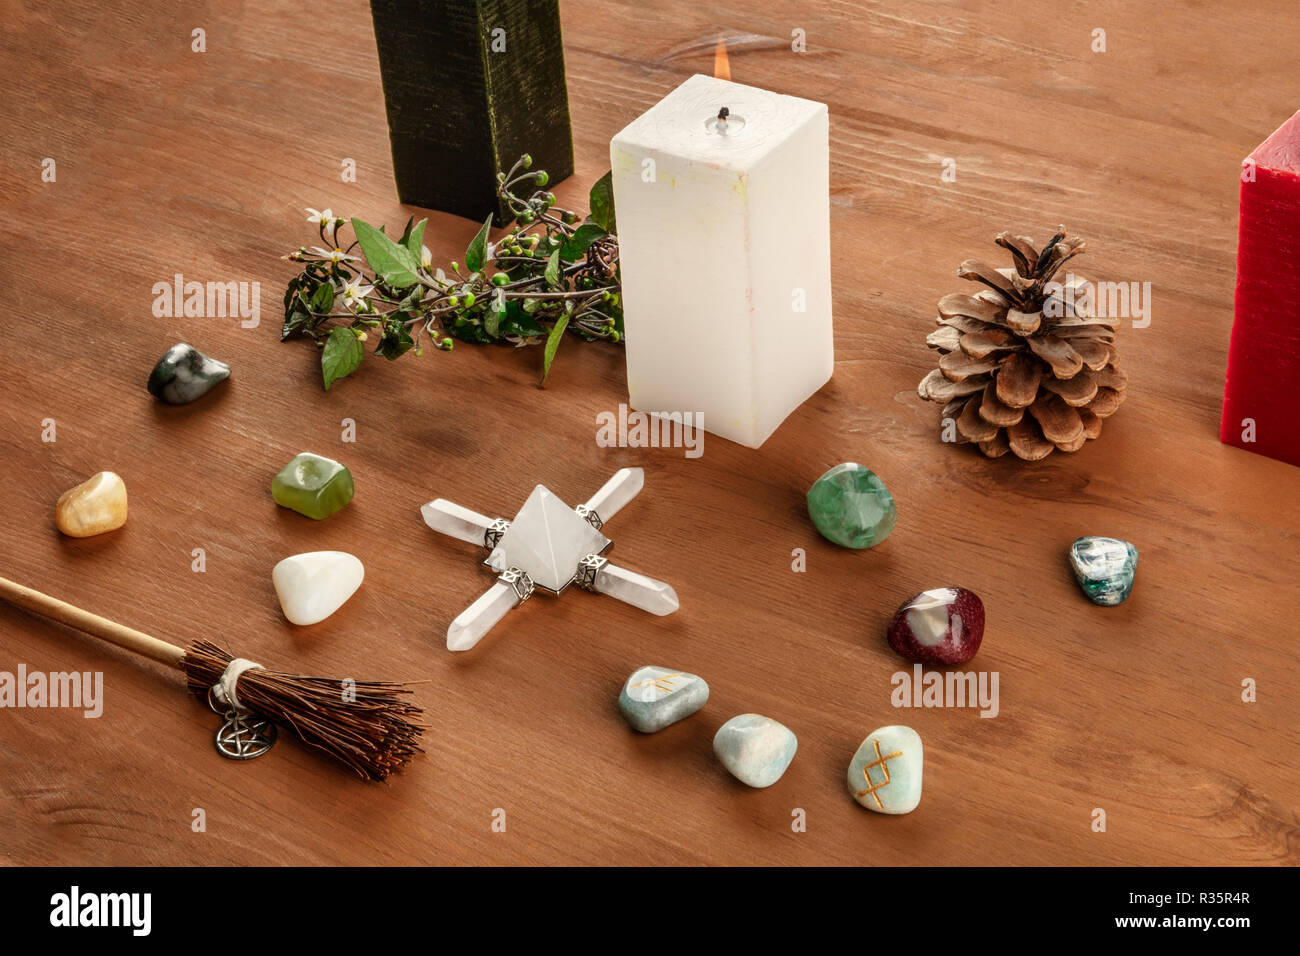 Die Hexerei. Eine Wicca Altar mit Kerzen, Kristall Steinen, und Runen, mit einem kleinen Besen mit einem Pentagramm, auf einem dunklen Holzmöbeln im Landhausstil Hintergrund Stockfoto